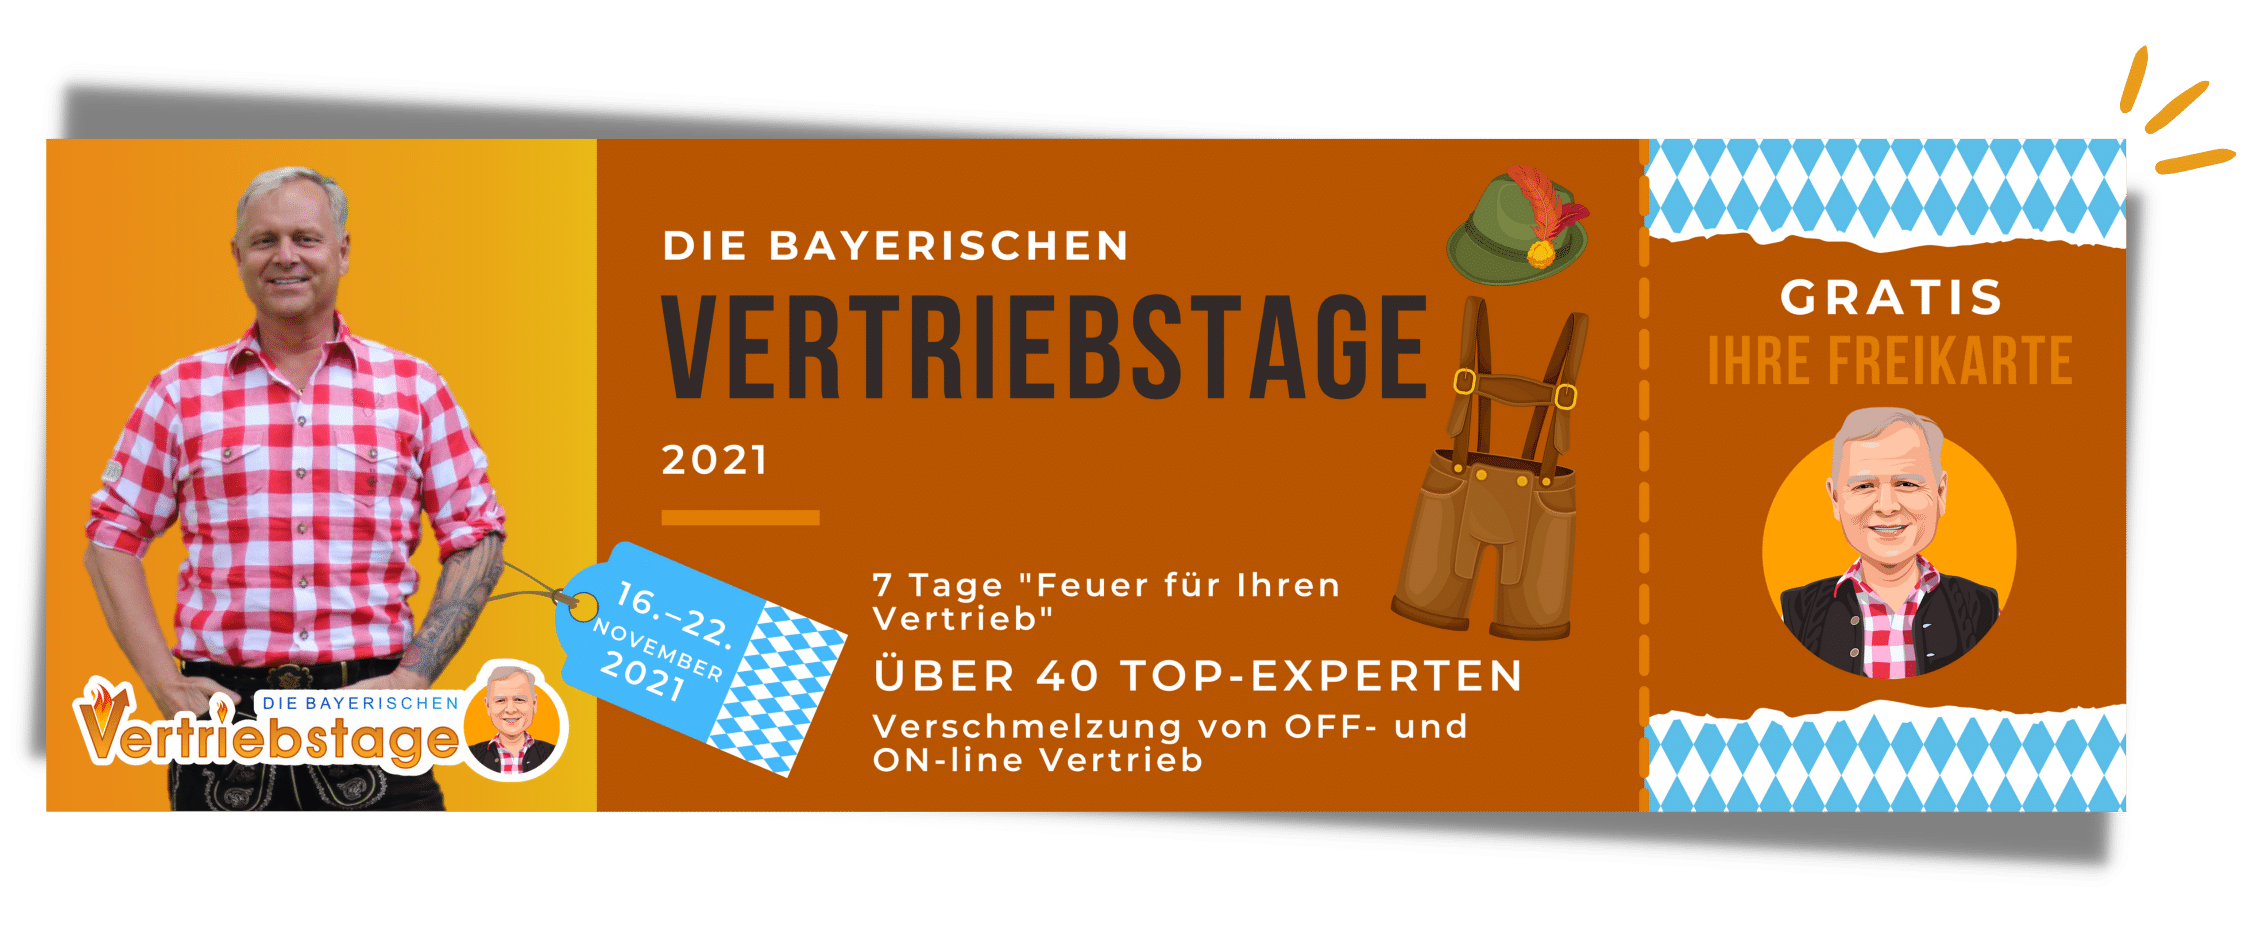 Rieder, Uwe, Die bayerischen Vertriebstage 16-22. Nov. 2021, Bild Ticket